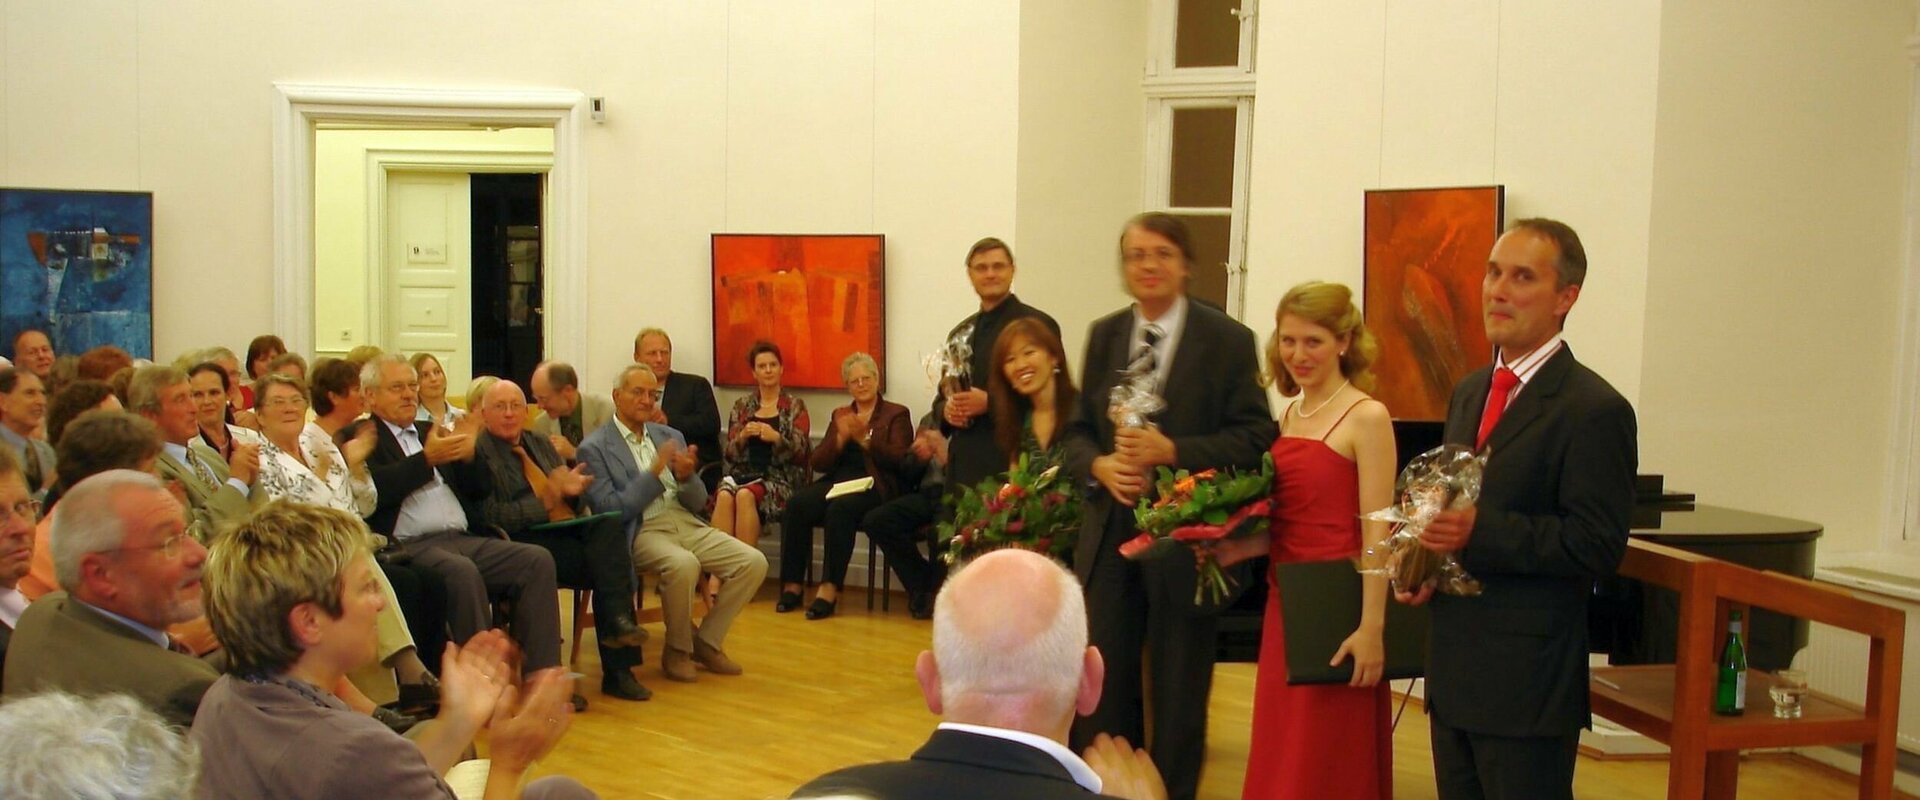 Fünf Musiker (drei Männer und zwei Frauen) stehen in einem mit Bildern geschmückten Raum vor einem Flügel und nehmen den Applas des vor ihnen sitzenden Publikums entgegen.